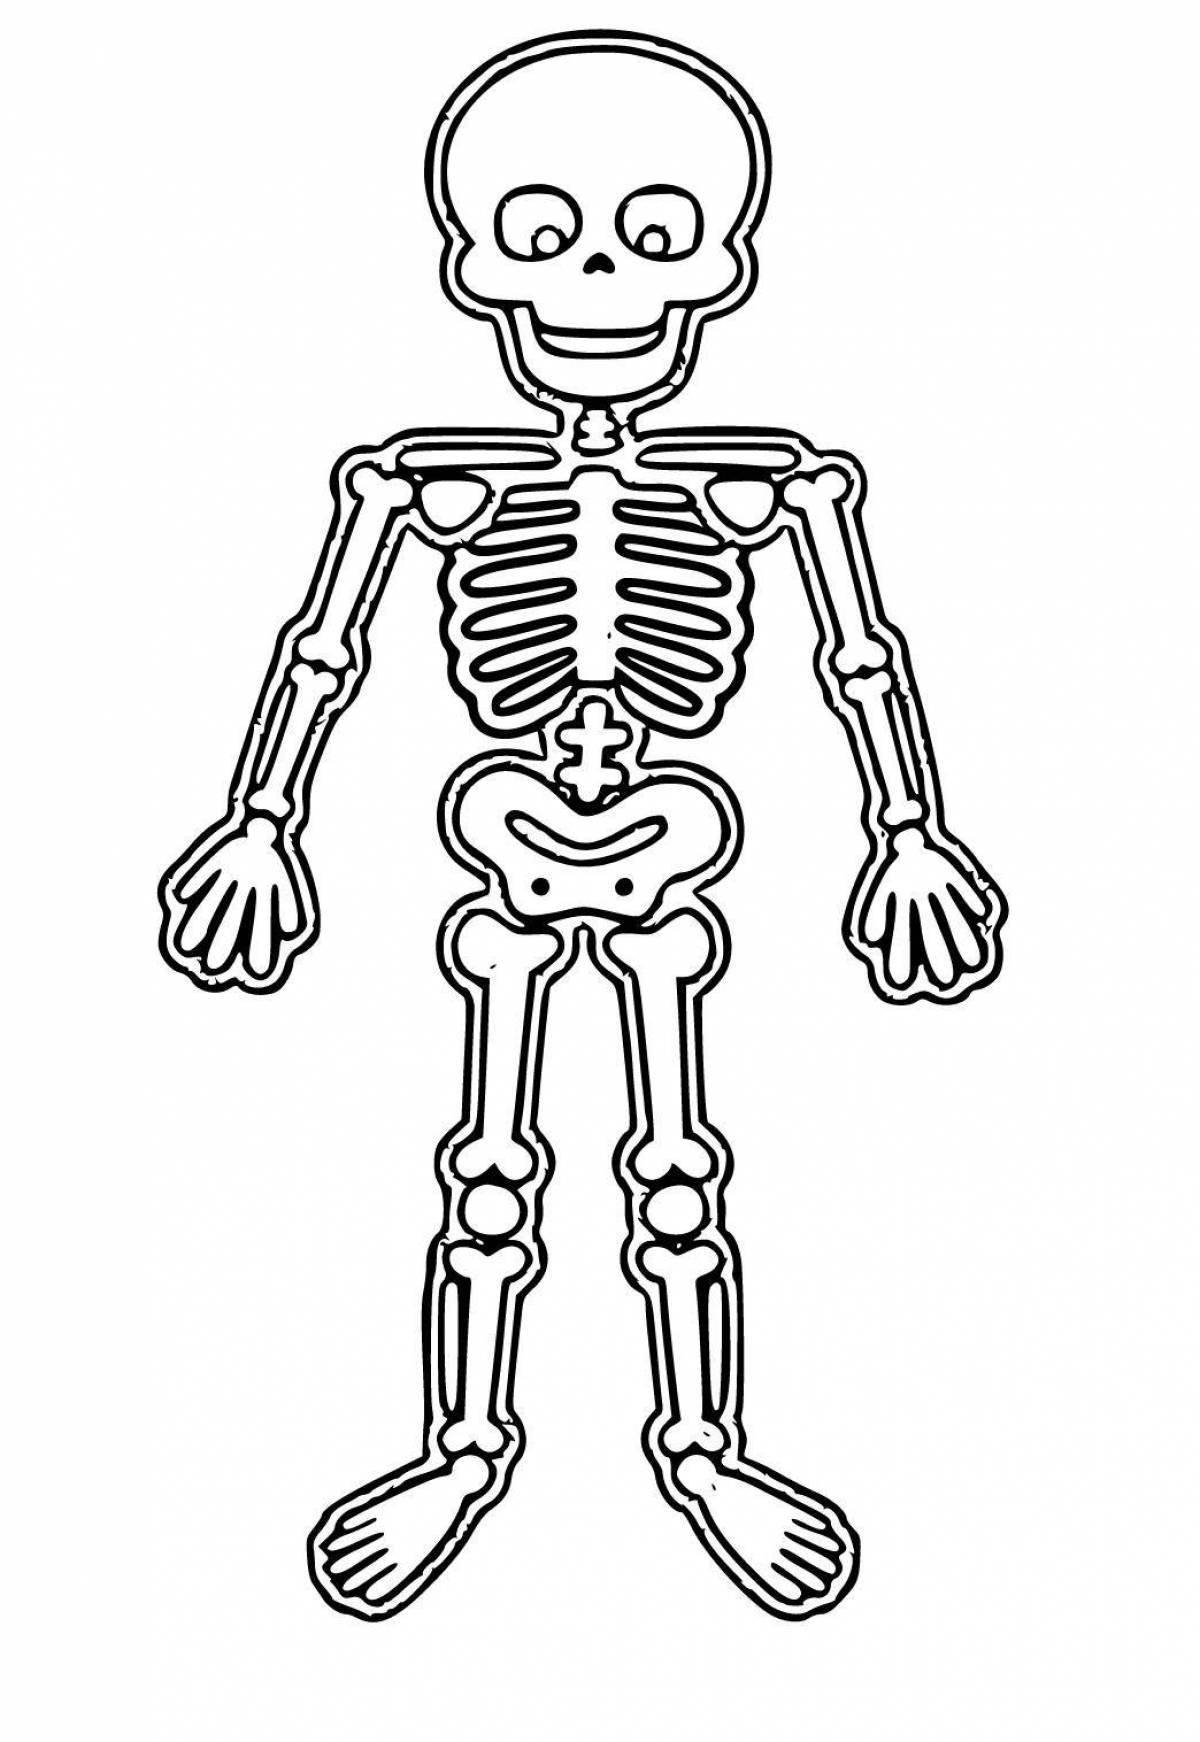 Радостная раскраска скелета для детей